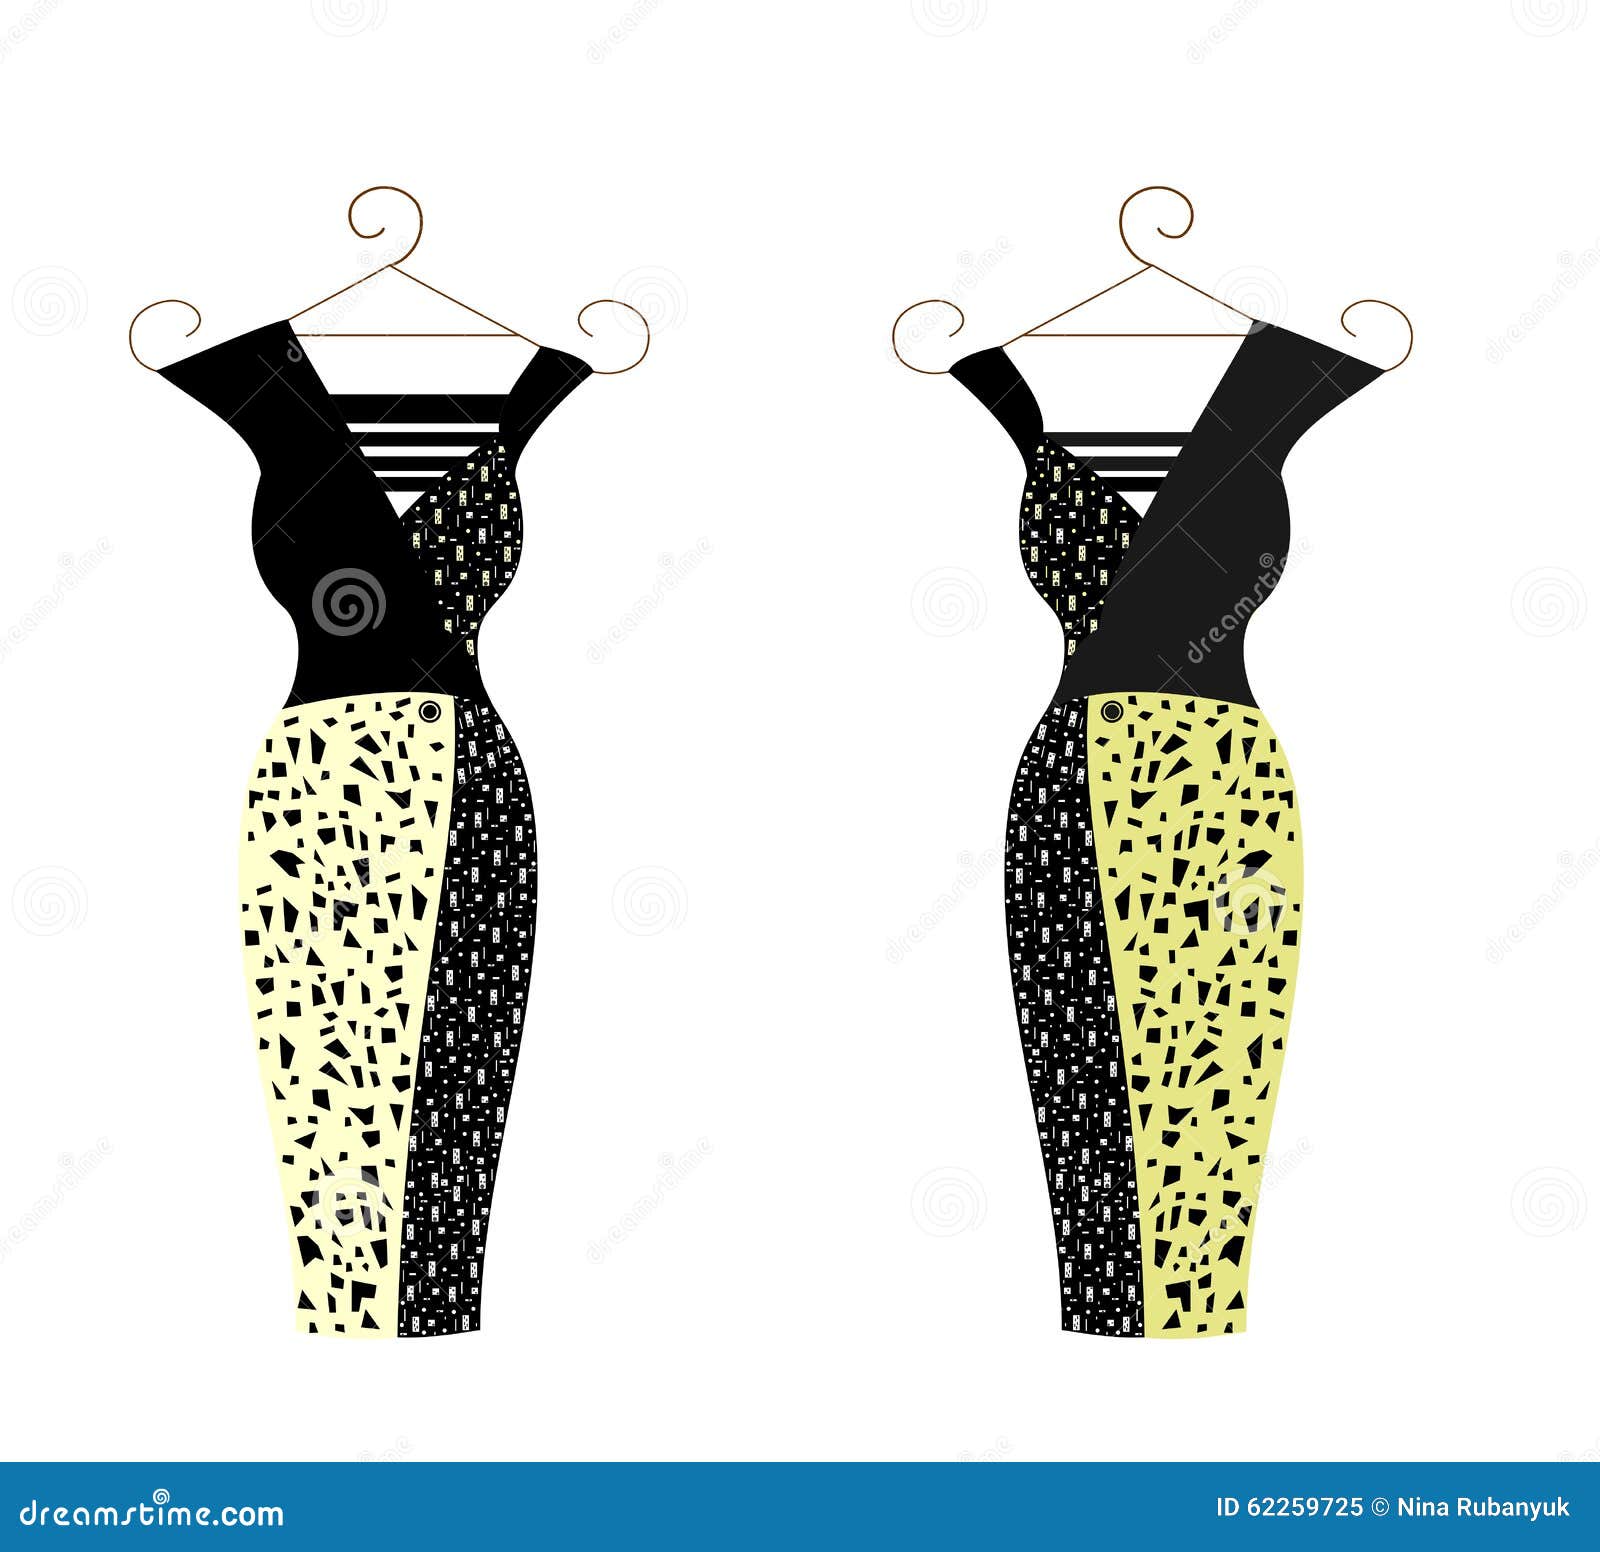 Dress for Women Illustration Stock Illustration - Illustration of ...